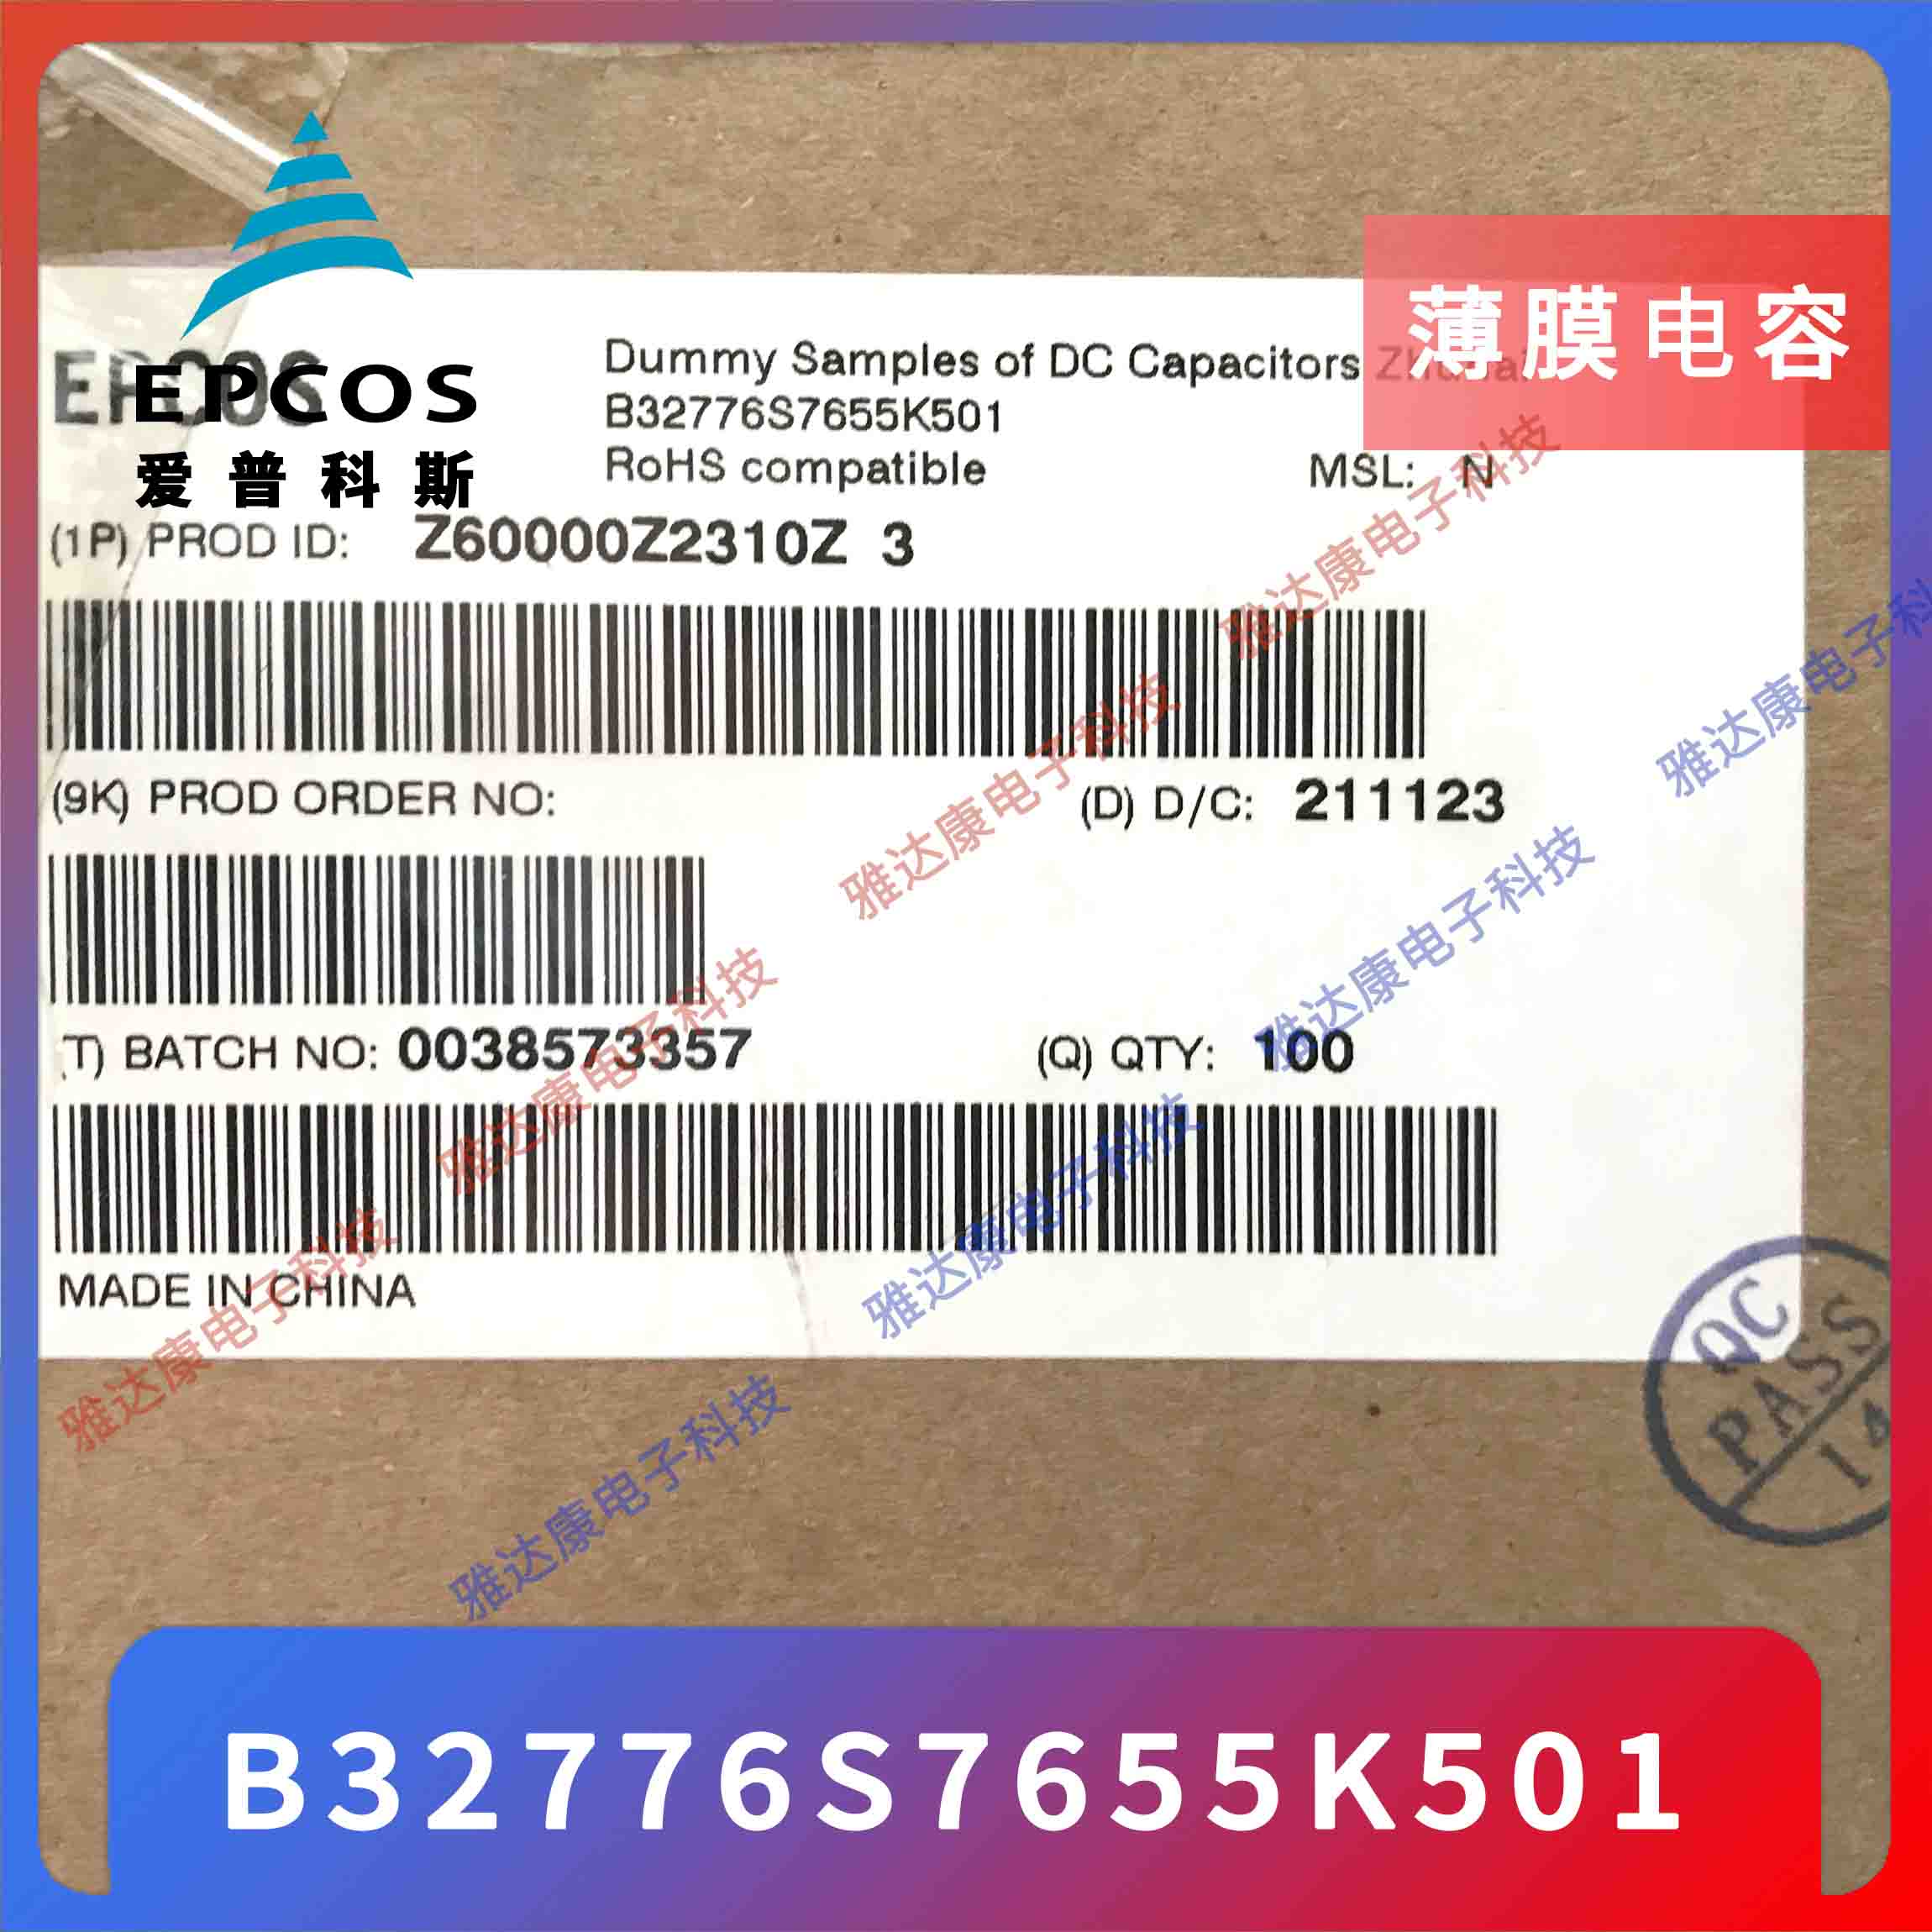 EPCOS电容器优势供应薄膜电容器 MKK230-D-7.5-02 B25673A2072A540图片